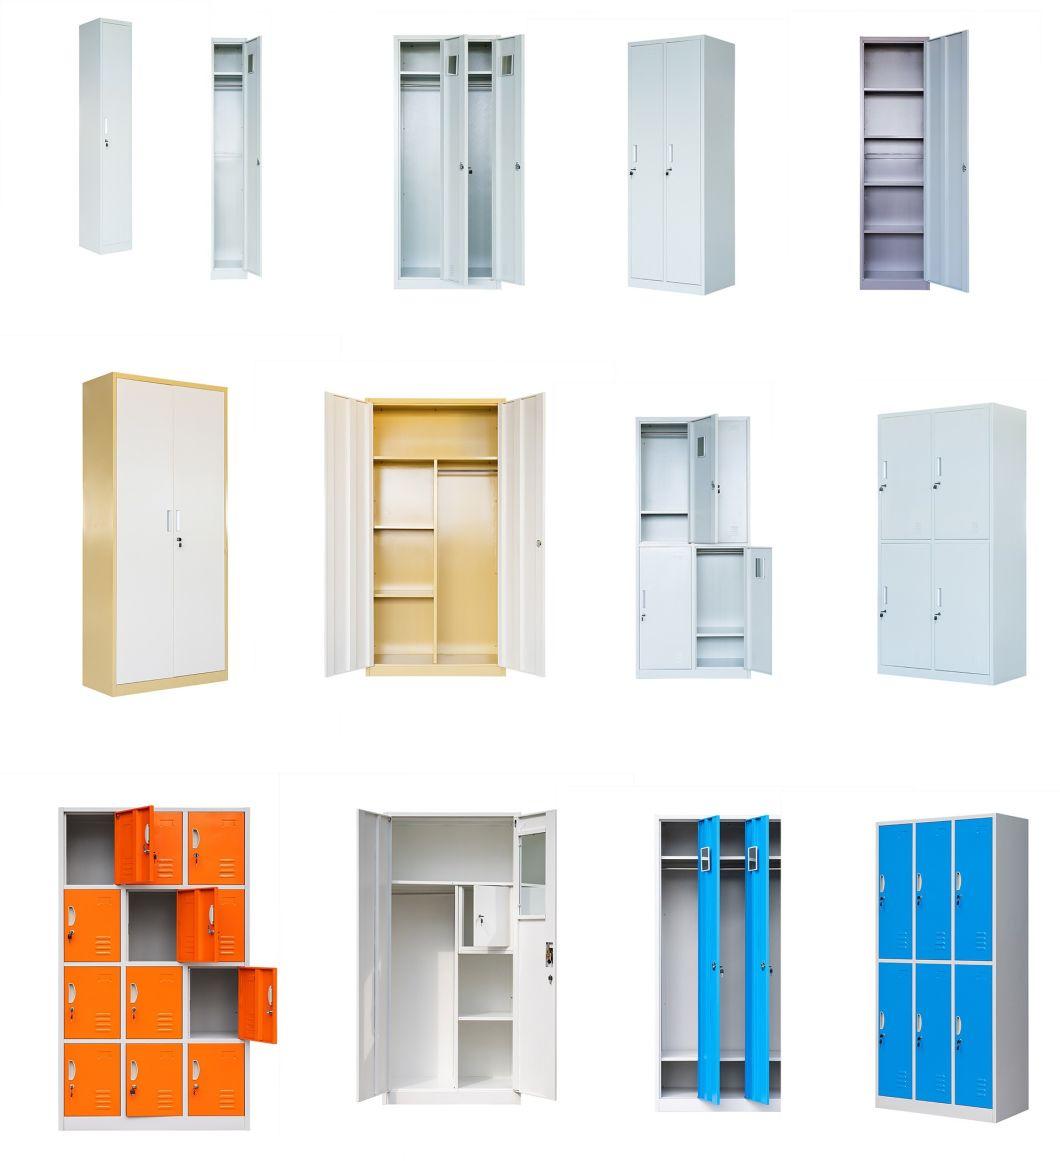 Wholesale Metal Steel Anti-Tilt 4 Drawers Vertical Filing Storage Cabinet